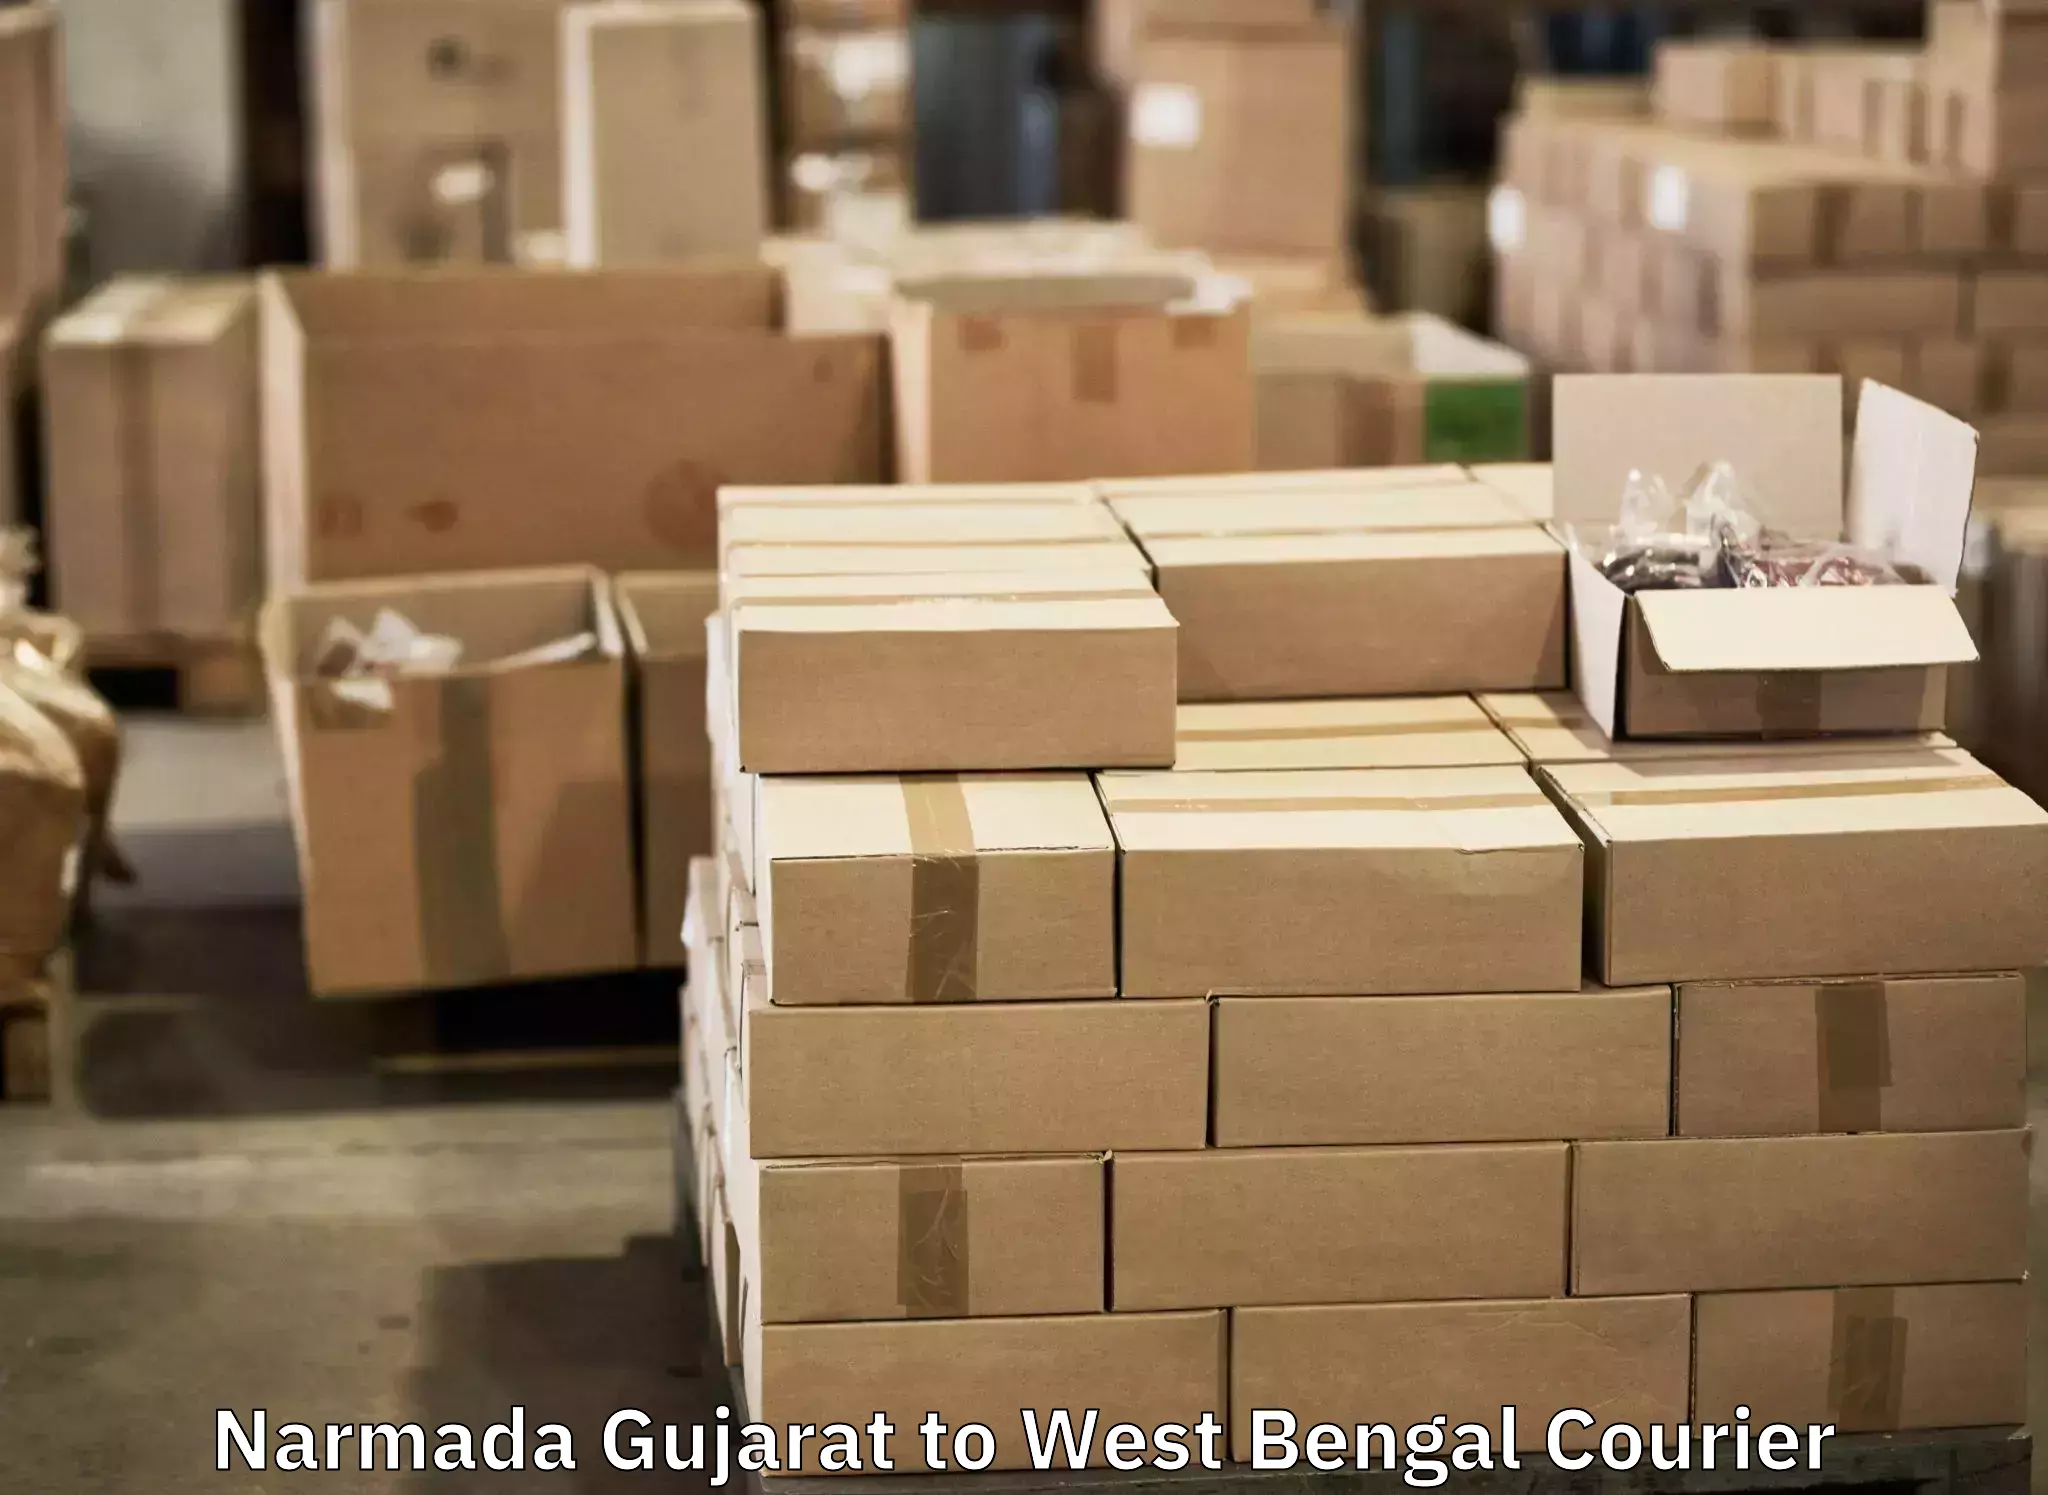 Baggage transport scheduler Narmada Gujarat to Nabadwip